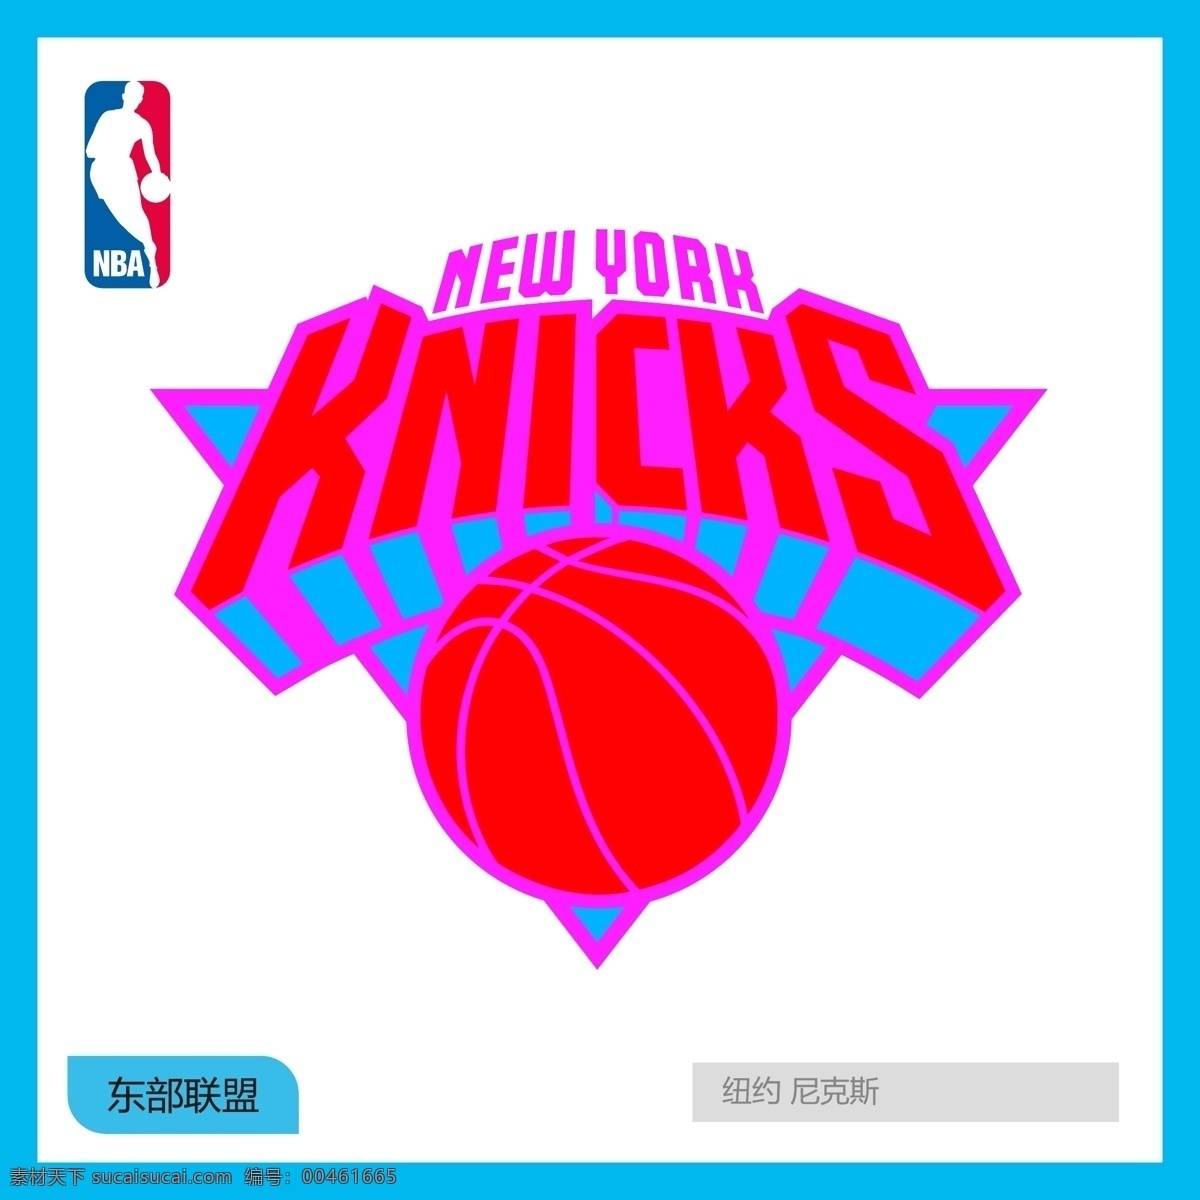 纽约尼克斯队 纽约 尼克斯队 nba 东部联盟 西部联盟 全明星赛 总冠军 金牌选手 篮球 足球 橄榄球 棒球 游泳 奥运会 全运会 体育运动 明星 logo 标志 矢量 vi logo设计